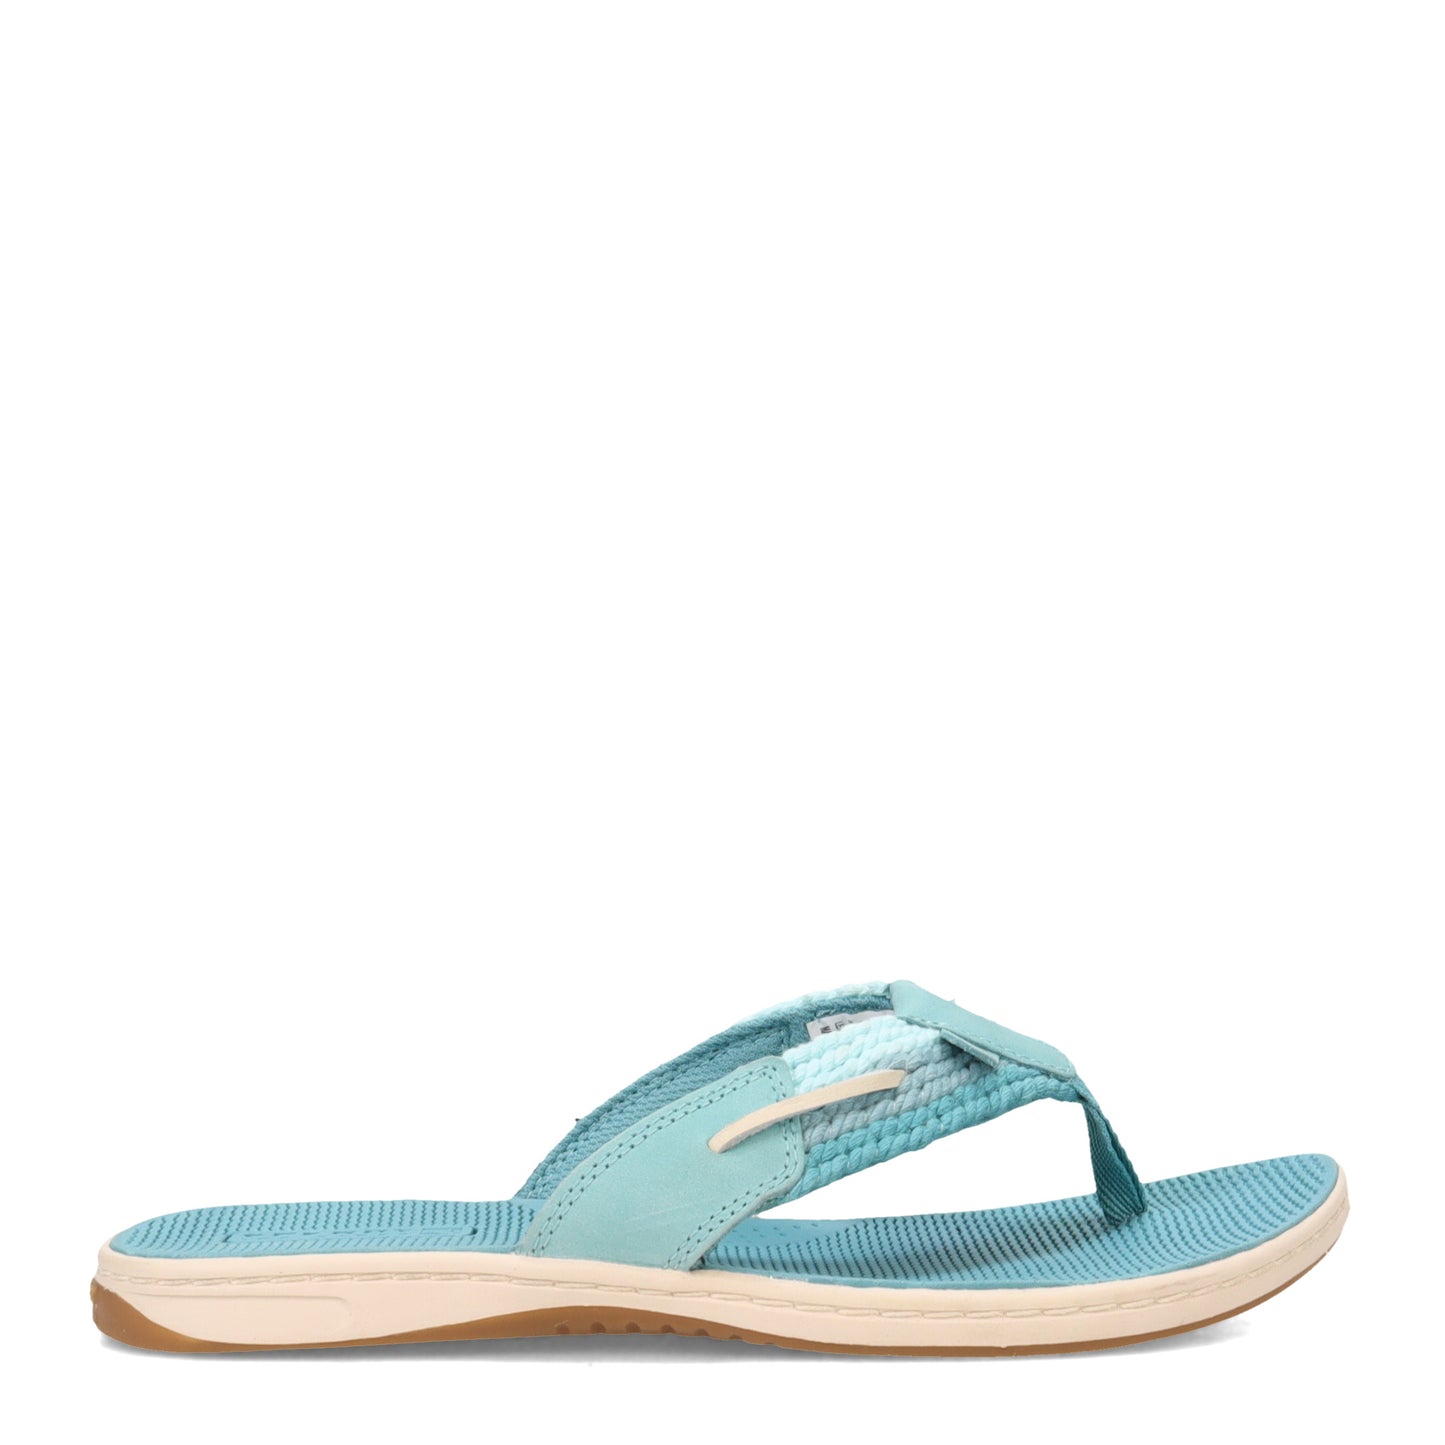 Peltz Shoes  Women's Sperry Parrotfish Sandal BLUE STS87249